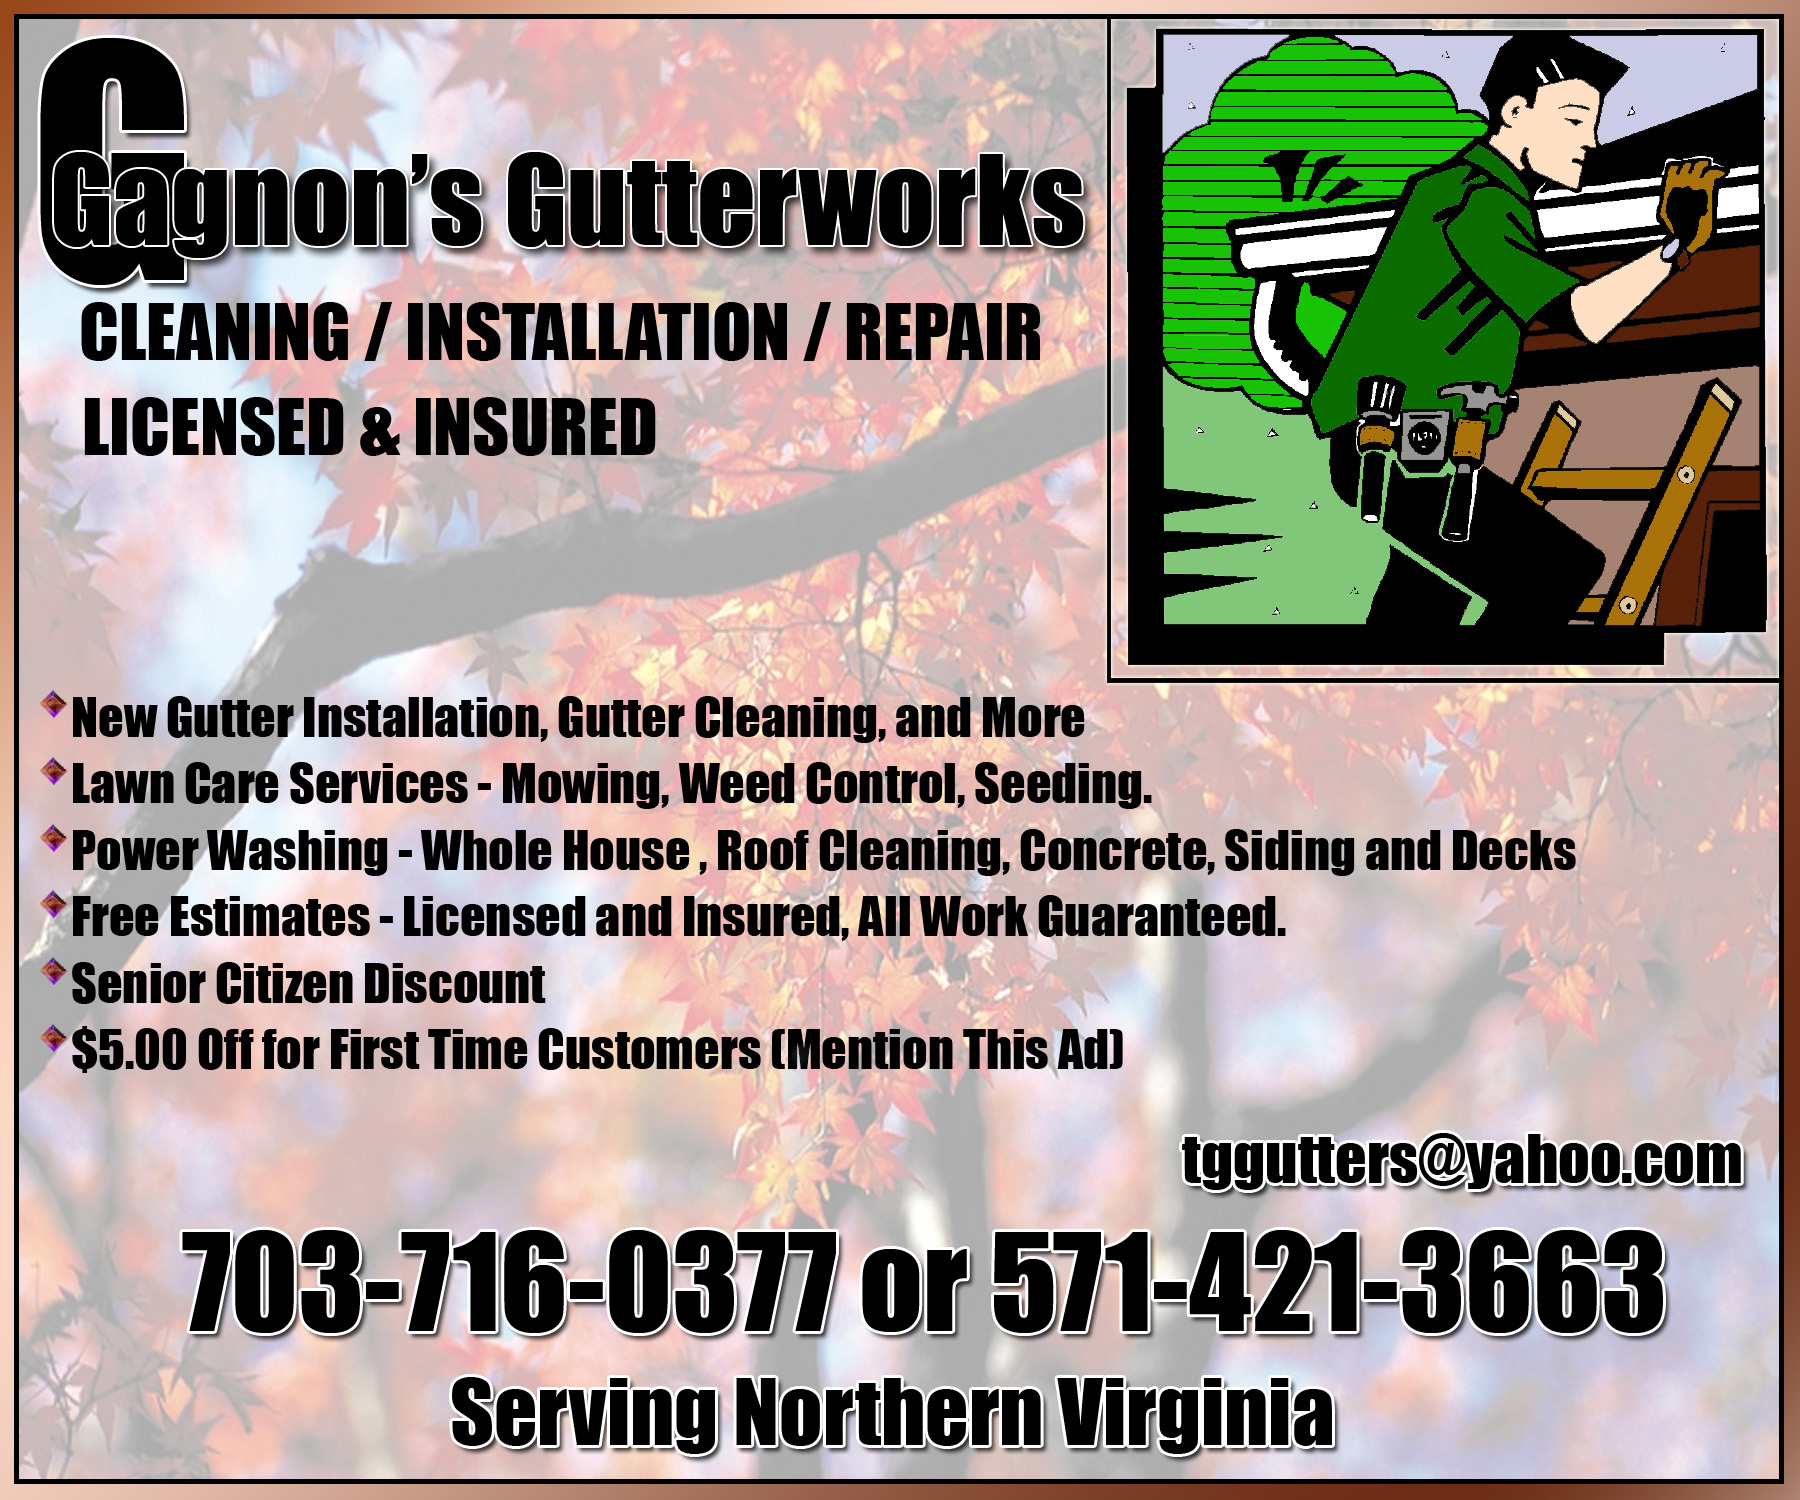 Gagnon's Gutterworks, LLC Logo